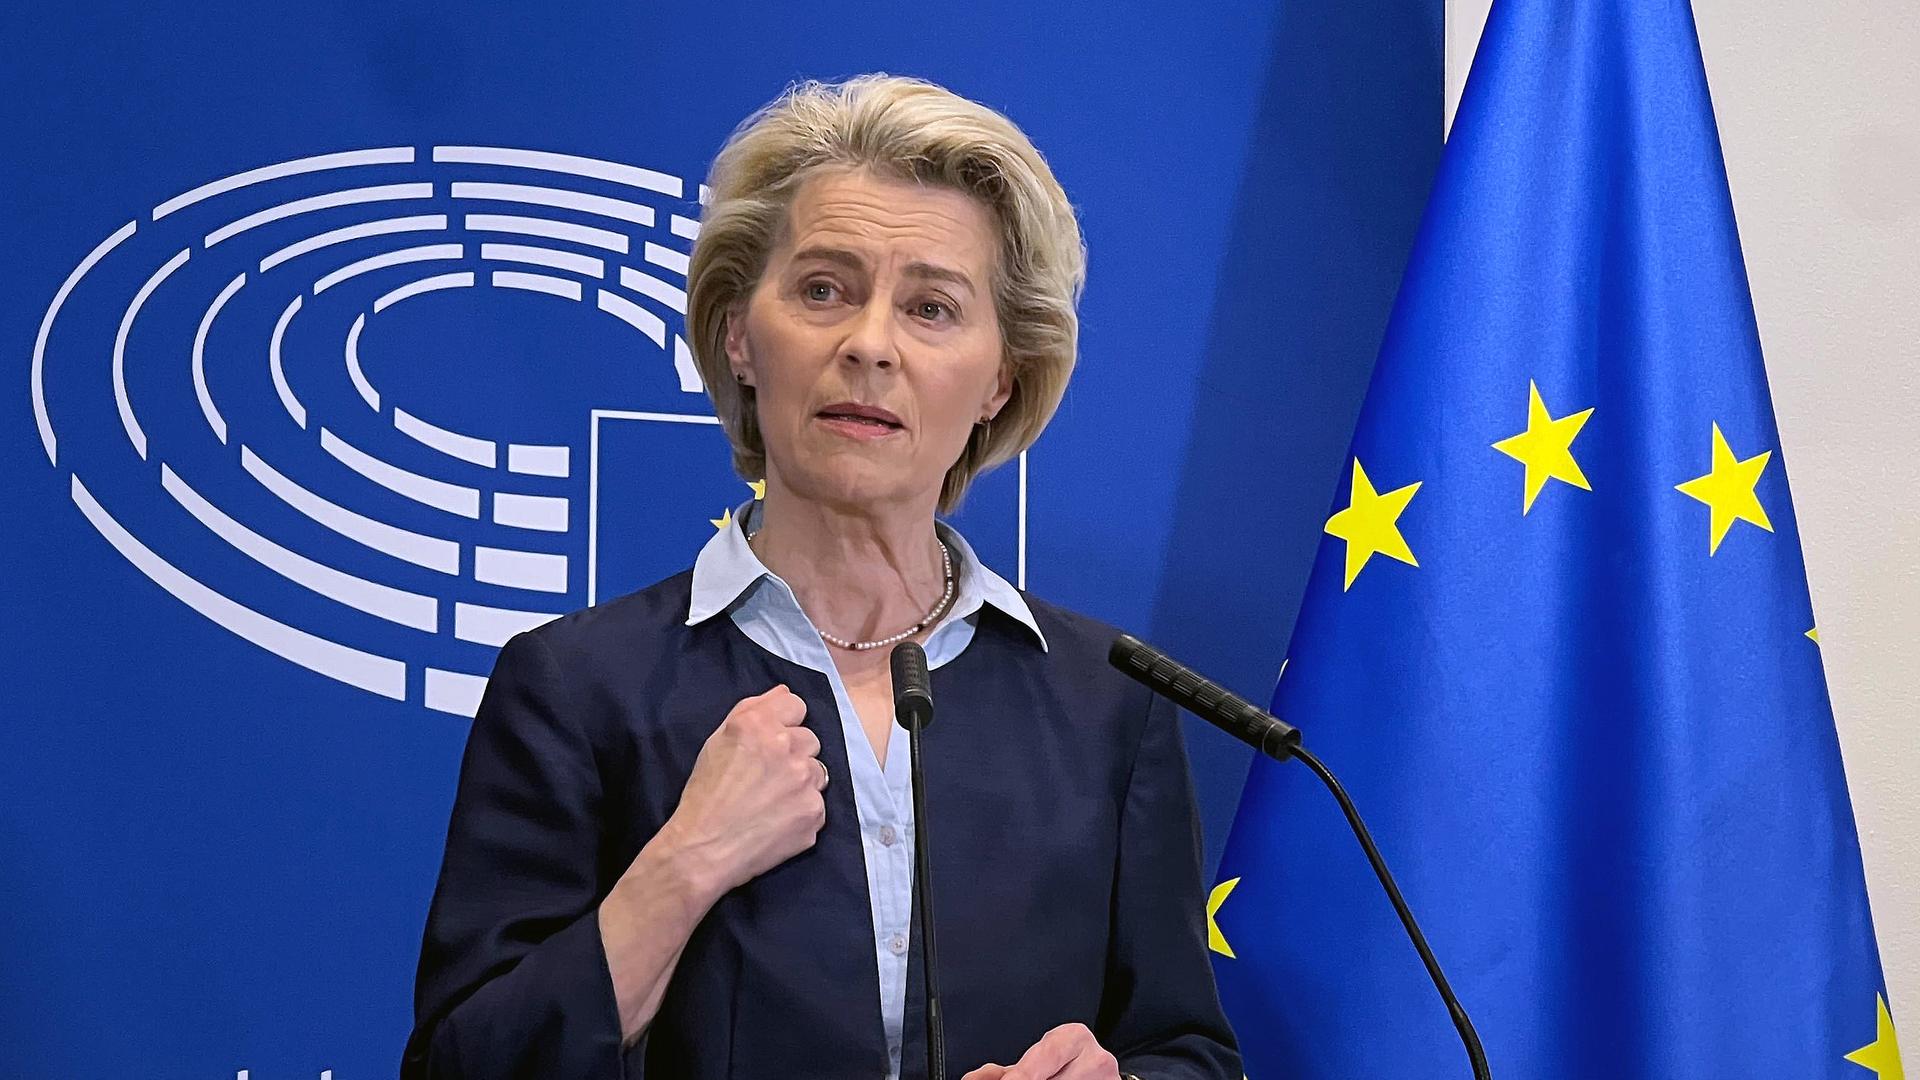 Ursula von der Leyen, Präsidentin der Europäischen Kommission, spricht bei einer Pressekonferenz im Europäischen Parlament. Hinter ihr das Logo des Europäischen Parlaments mit dem stilisierten Plenarsaal und daneben die EU-Flagge.  